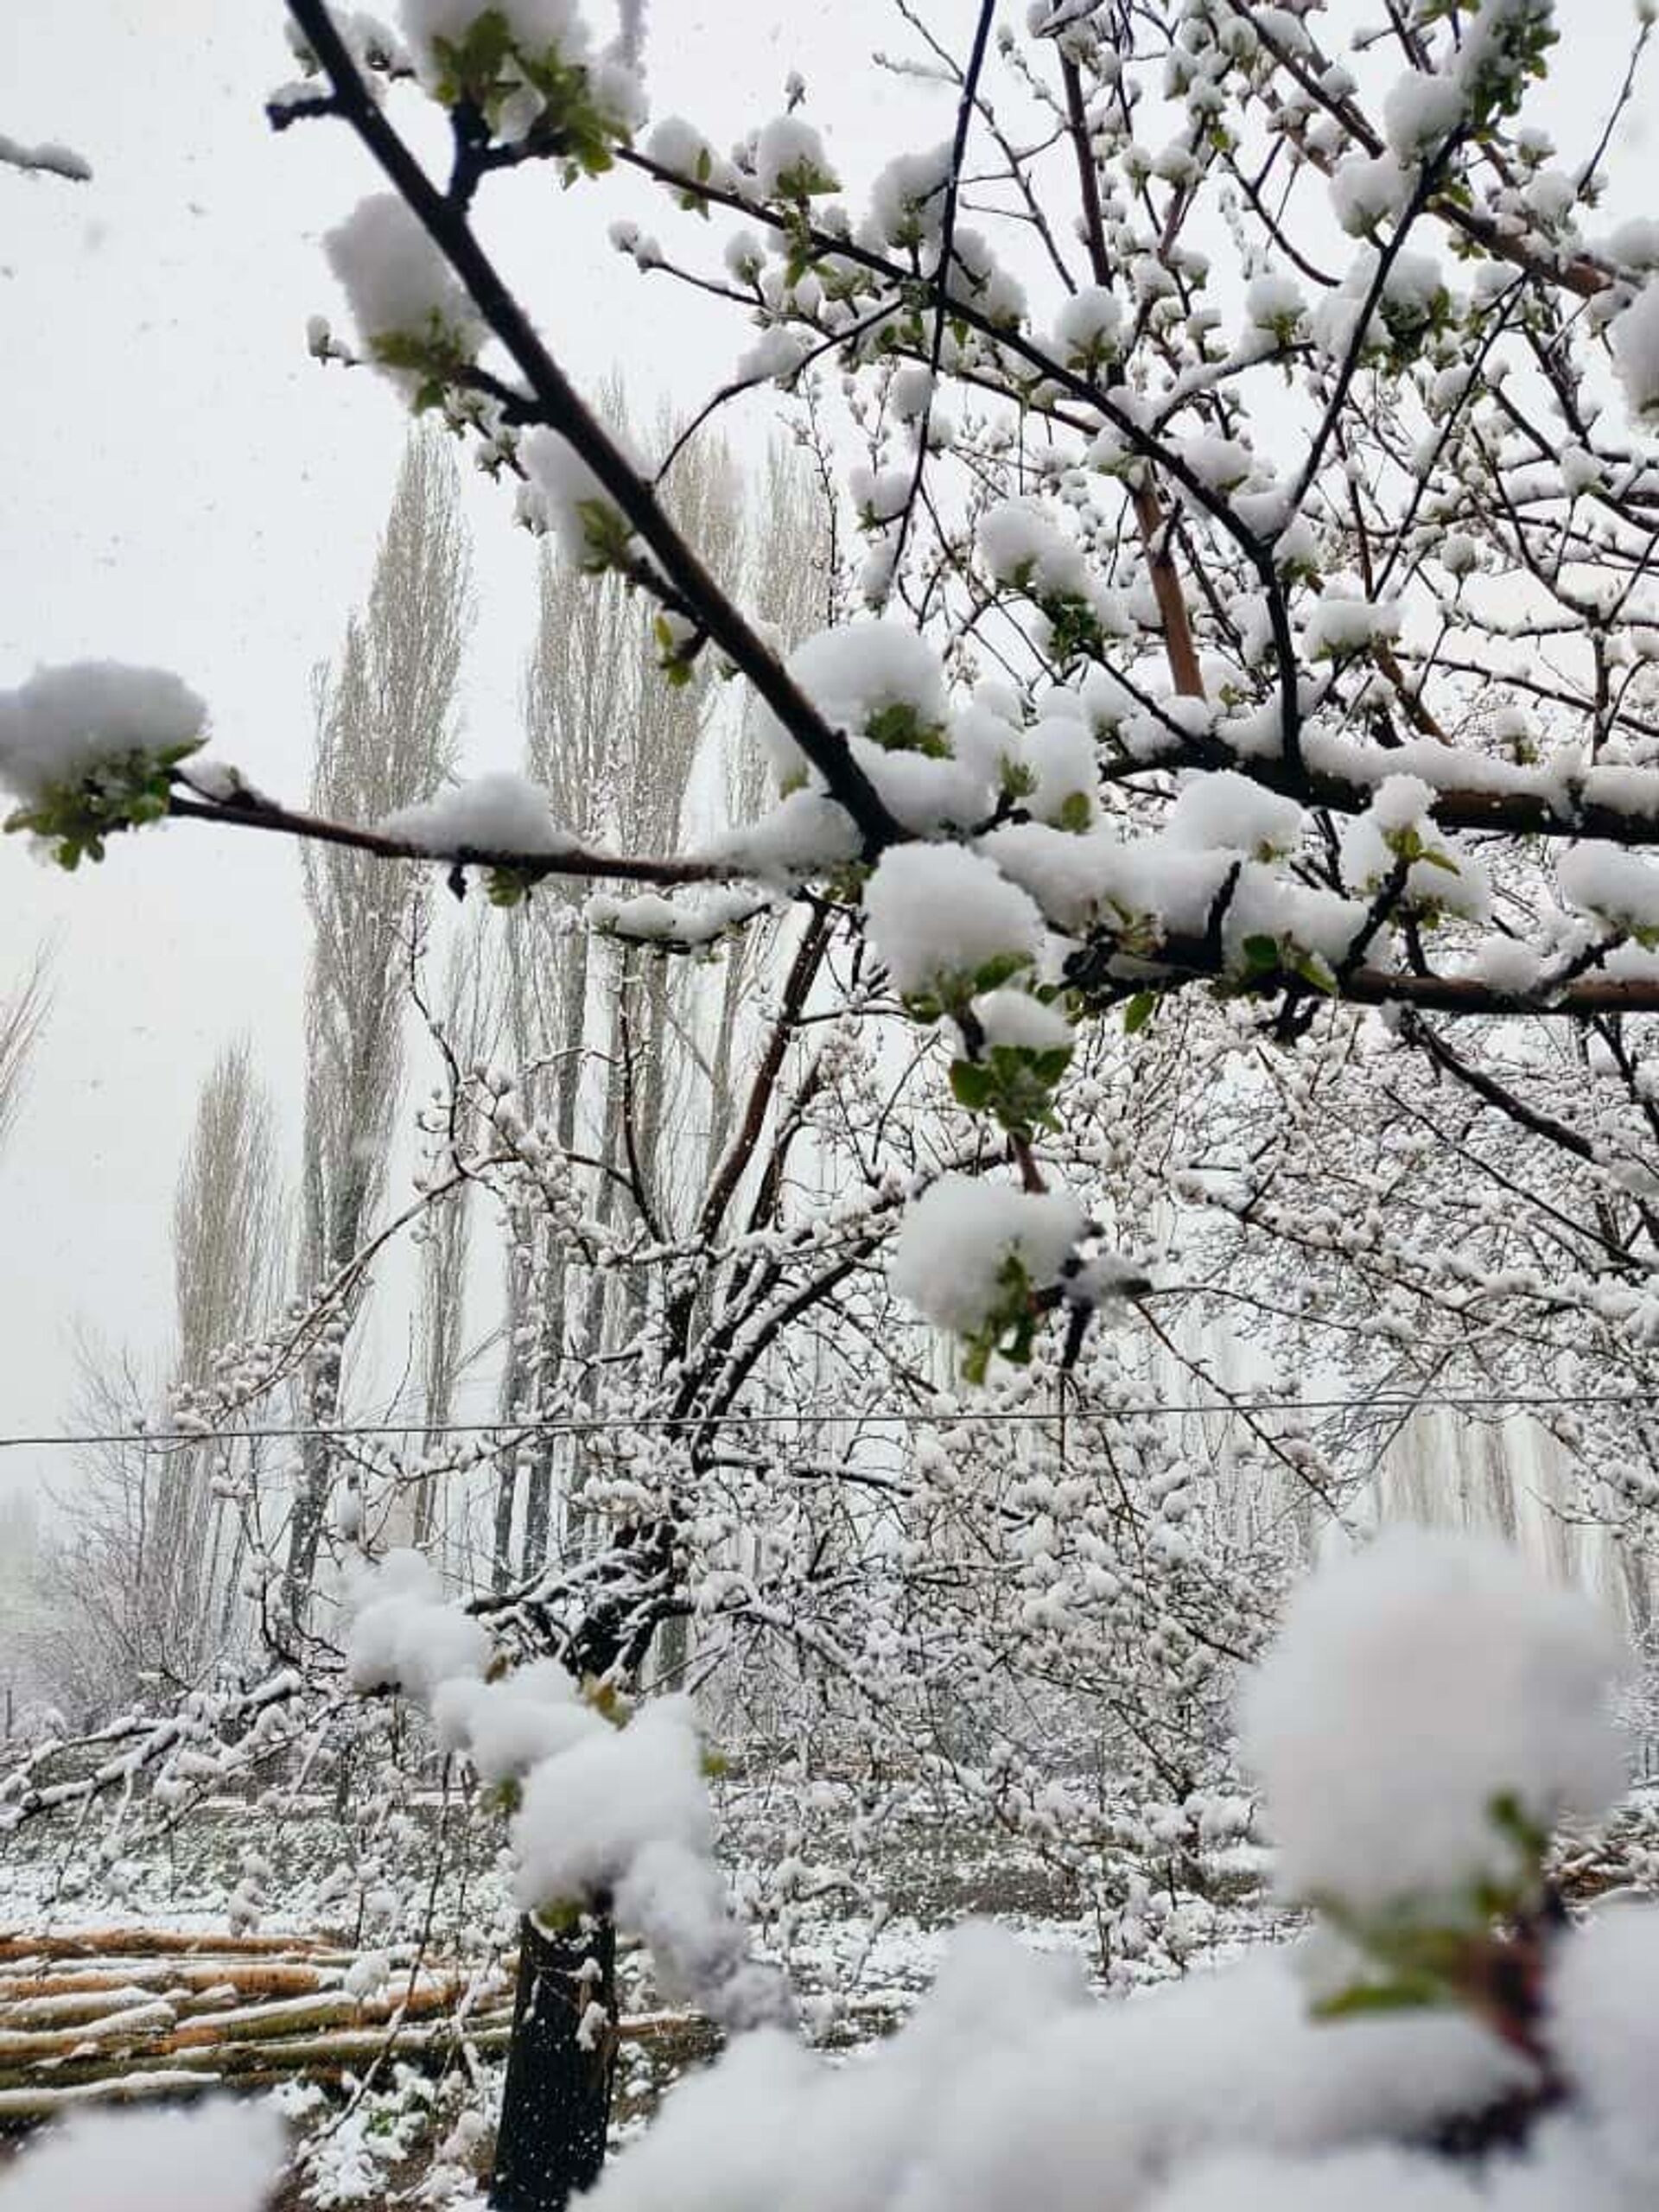 В регионы Кыргызстана вернулась зима — видео, фото обильного снега - Sputnik Кыргызстан, 1920, 22.04.2021